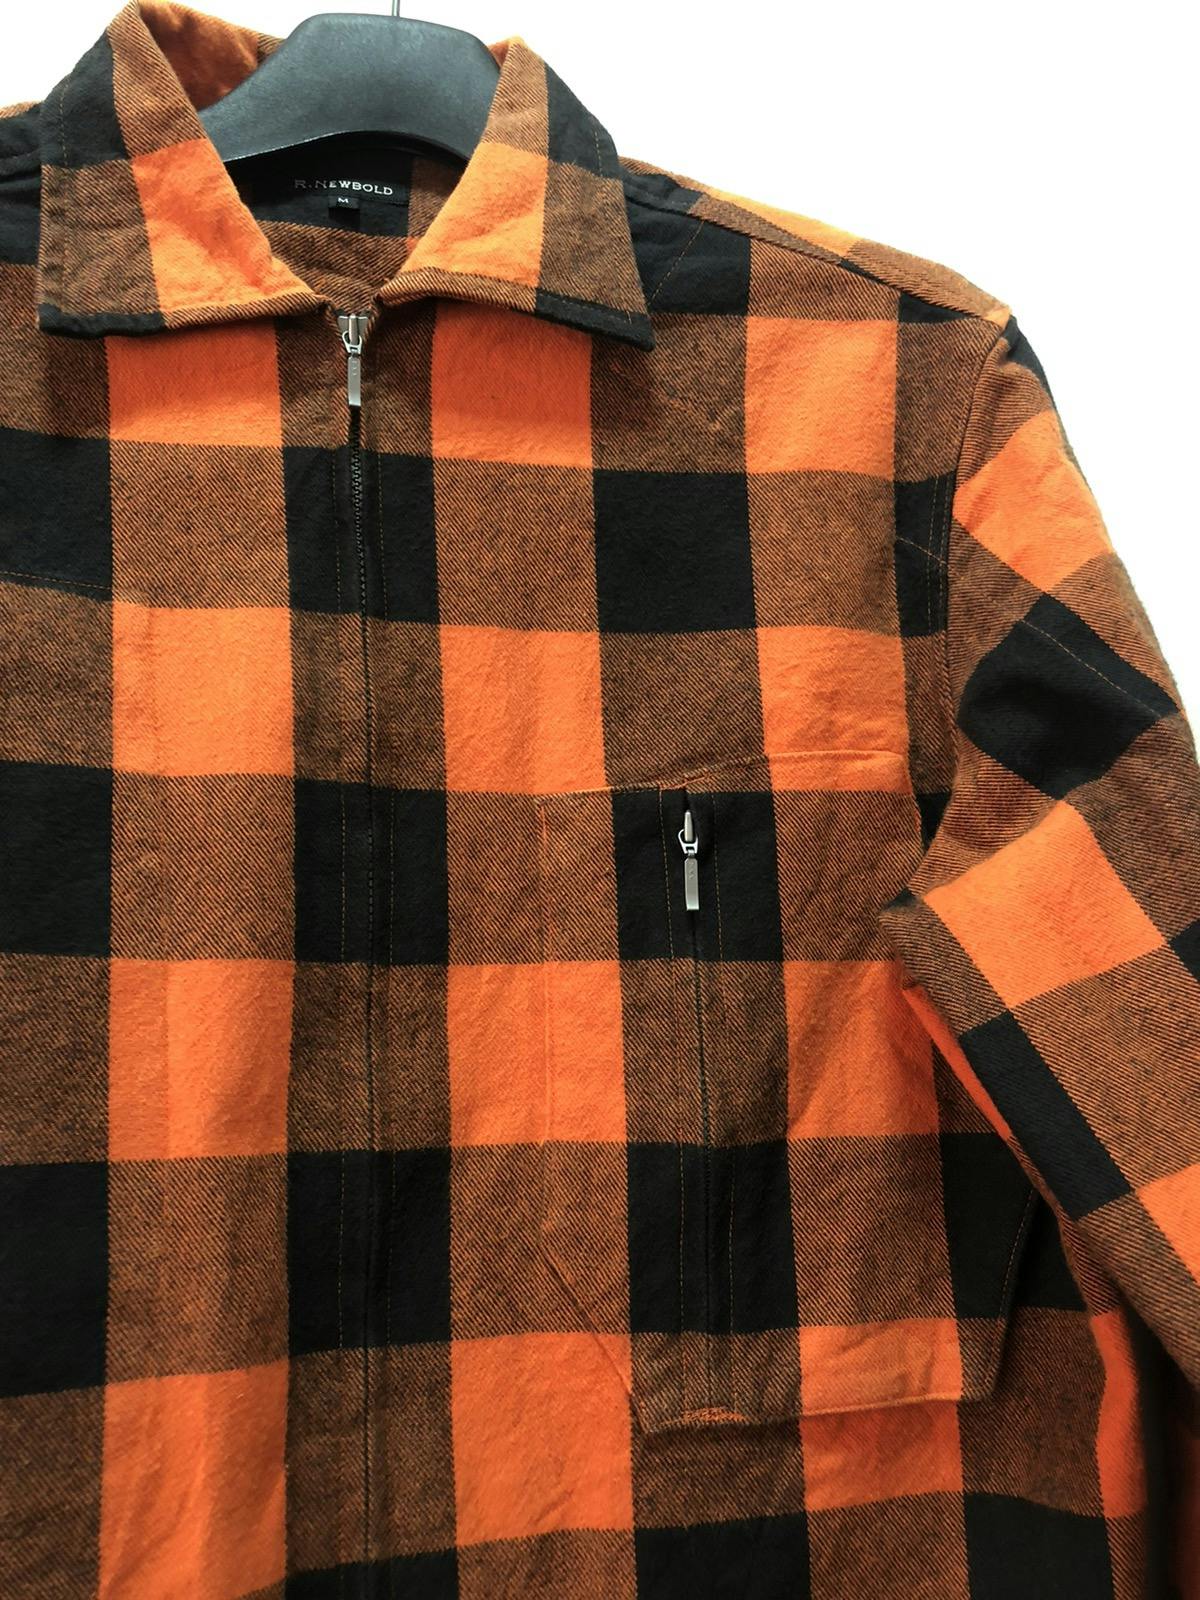 R NEWBOLD Flannel Shirt Zip Workwear - 3